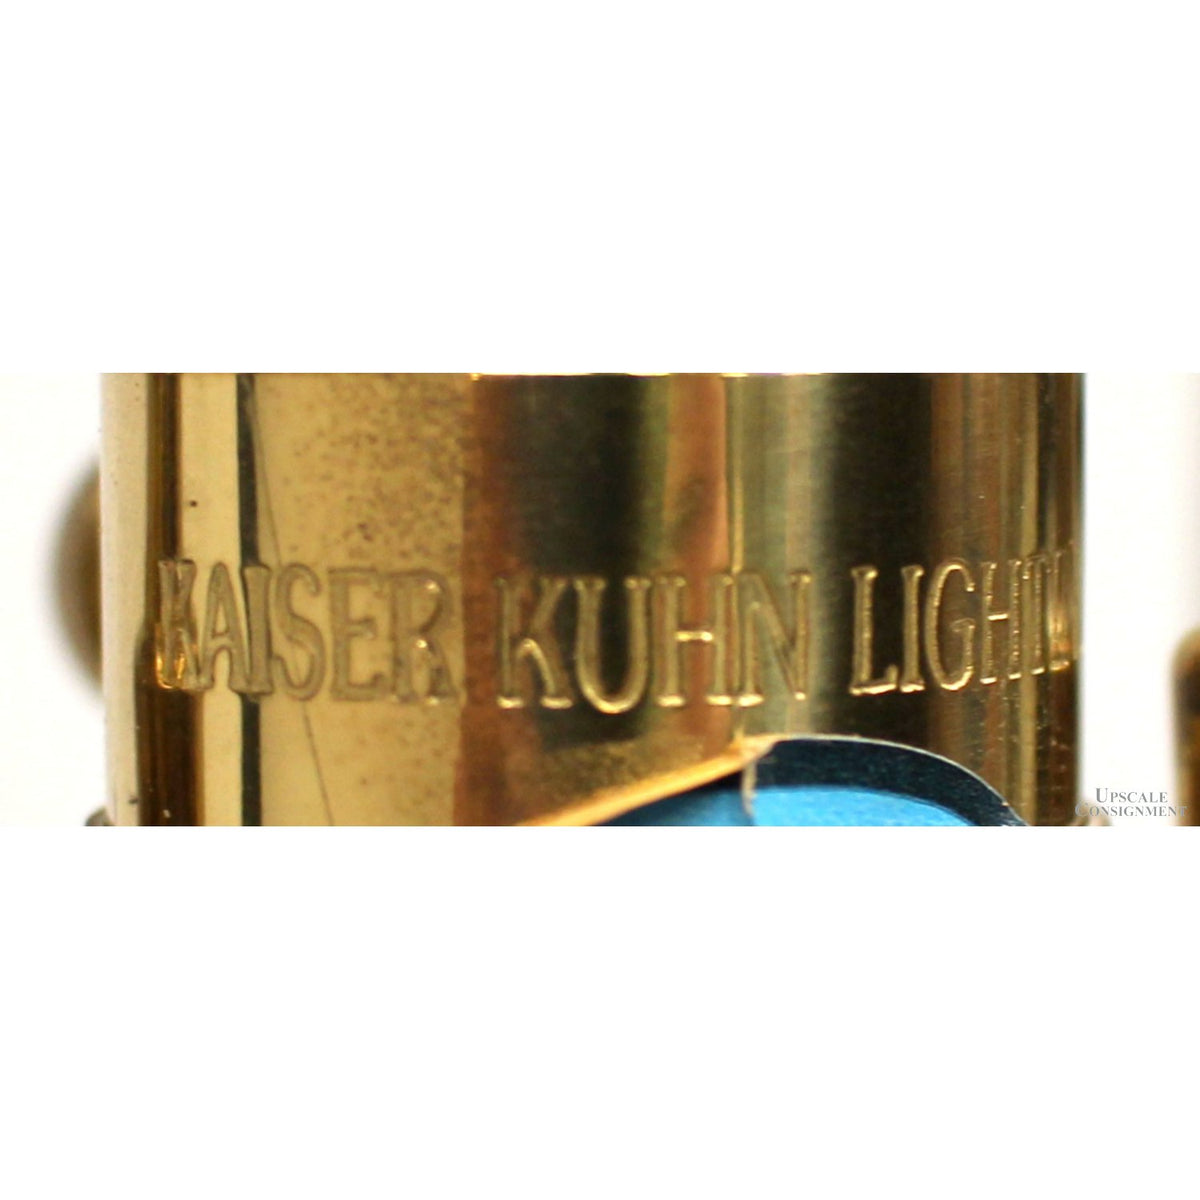 Kaiser Kuhn Lighting Brass Trophy Urn Table Lamp